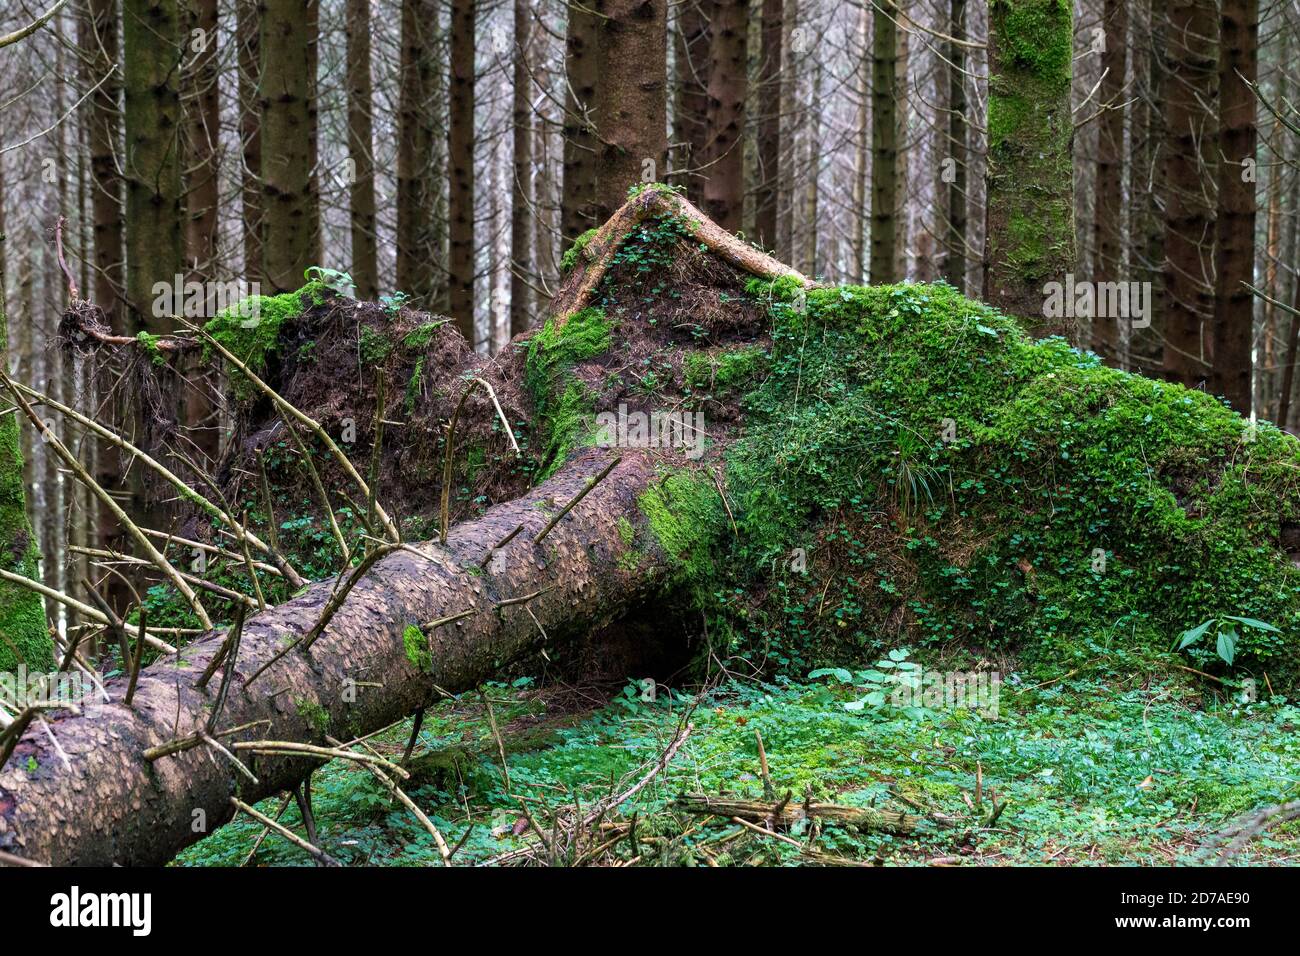 El árbol de la picea desarraigado y caído al suelo en el bosque de coníferas. Cansiglio meseta de montaña. Veneto. Italia. Europa. Foto de stock